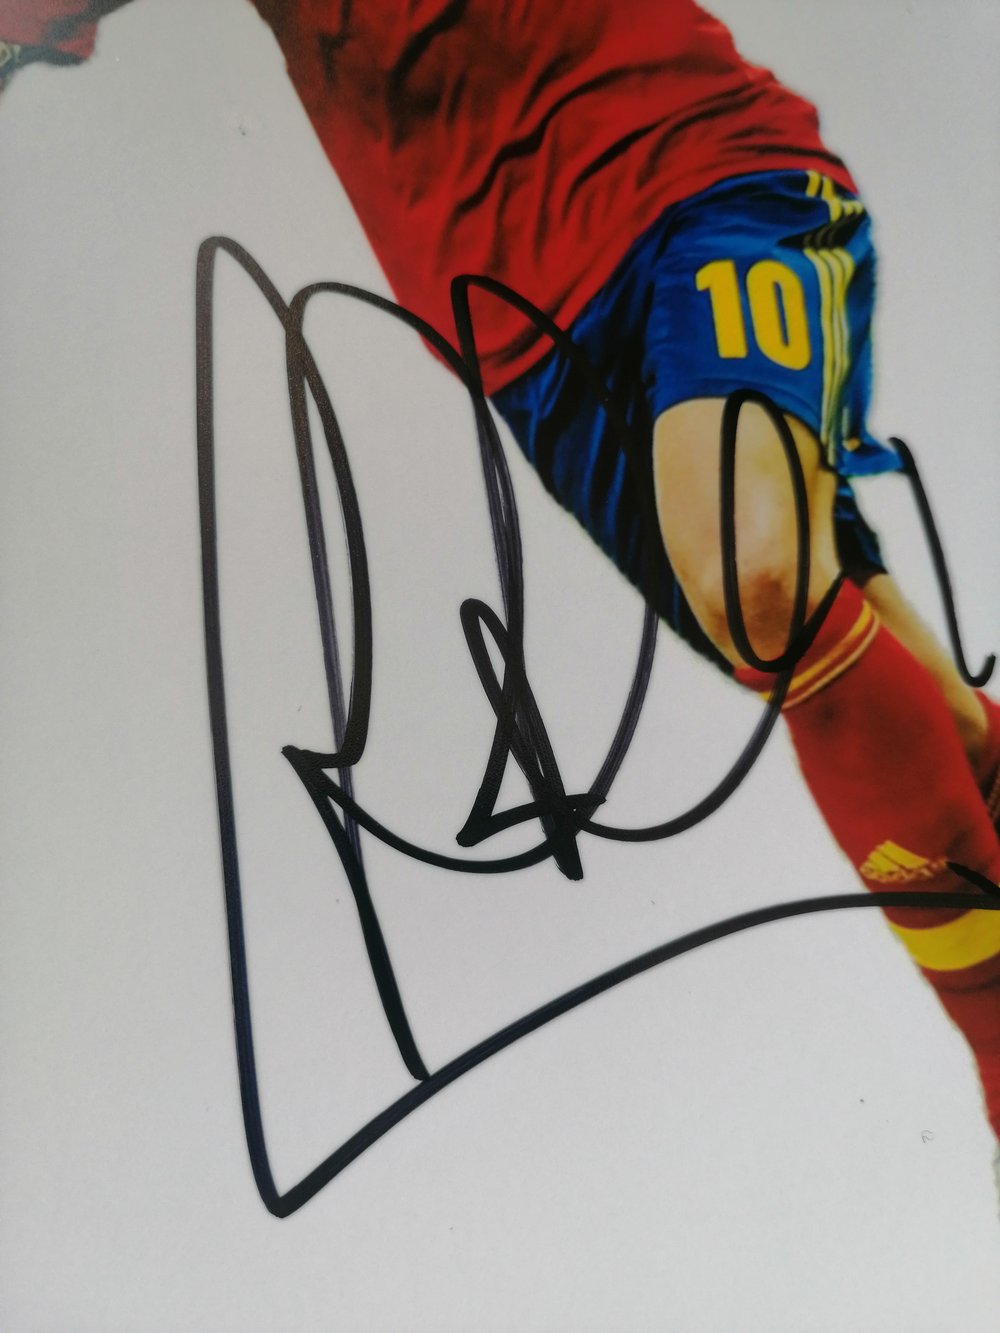 Cesc Fabregas Signed Spain 10x8